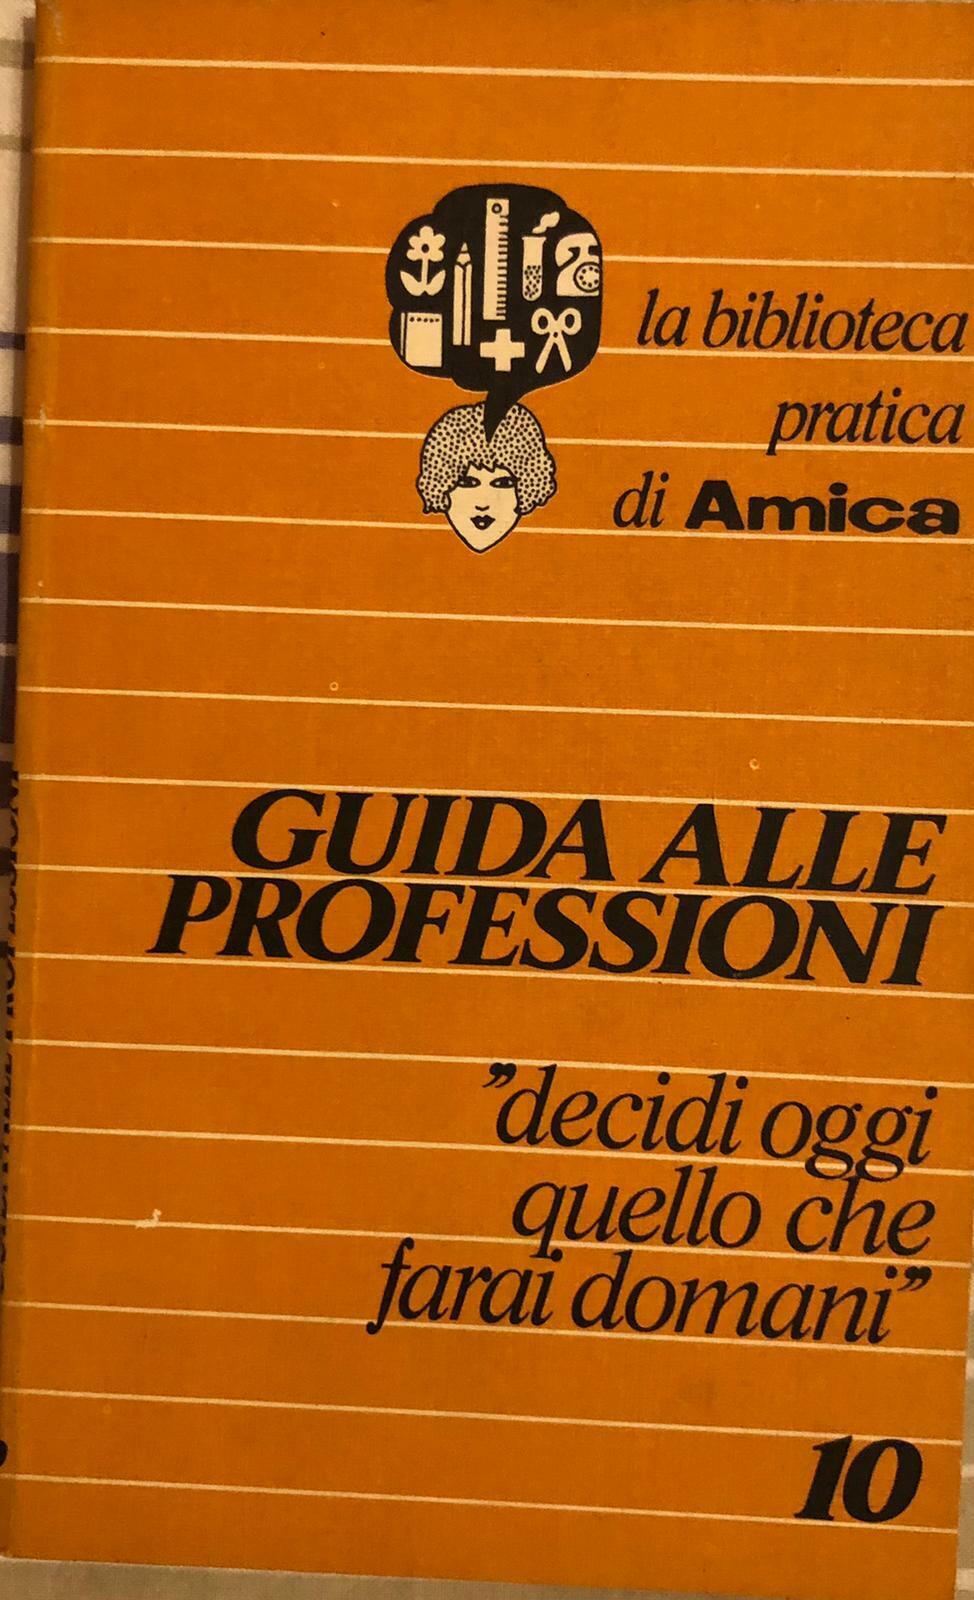 Guida alle professioni di AA.VV., 1978, Corriere della Sera